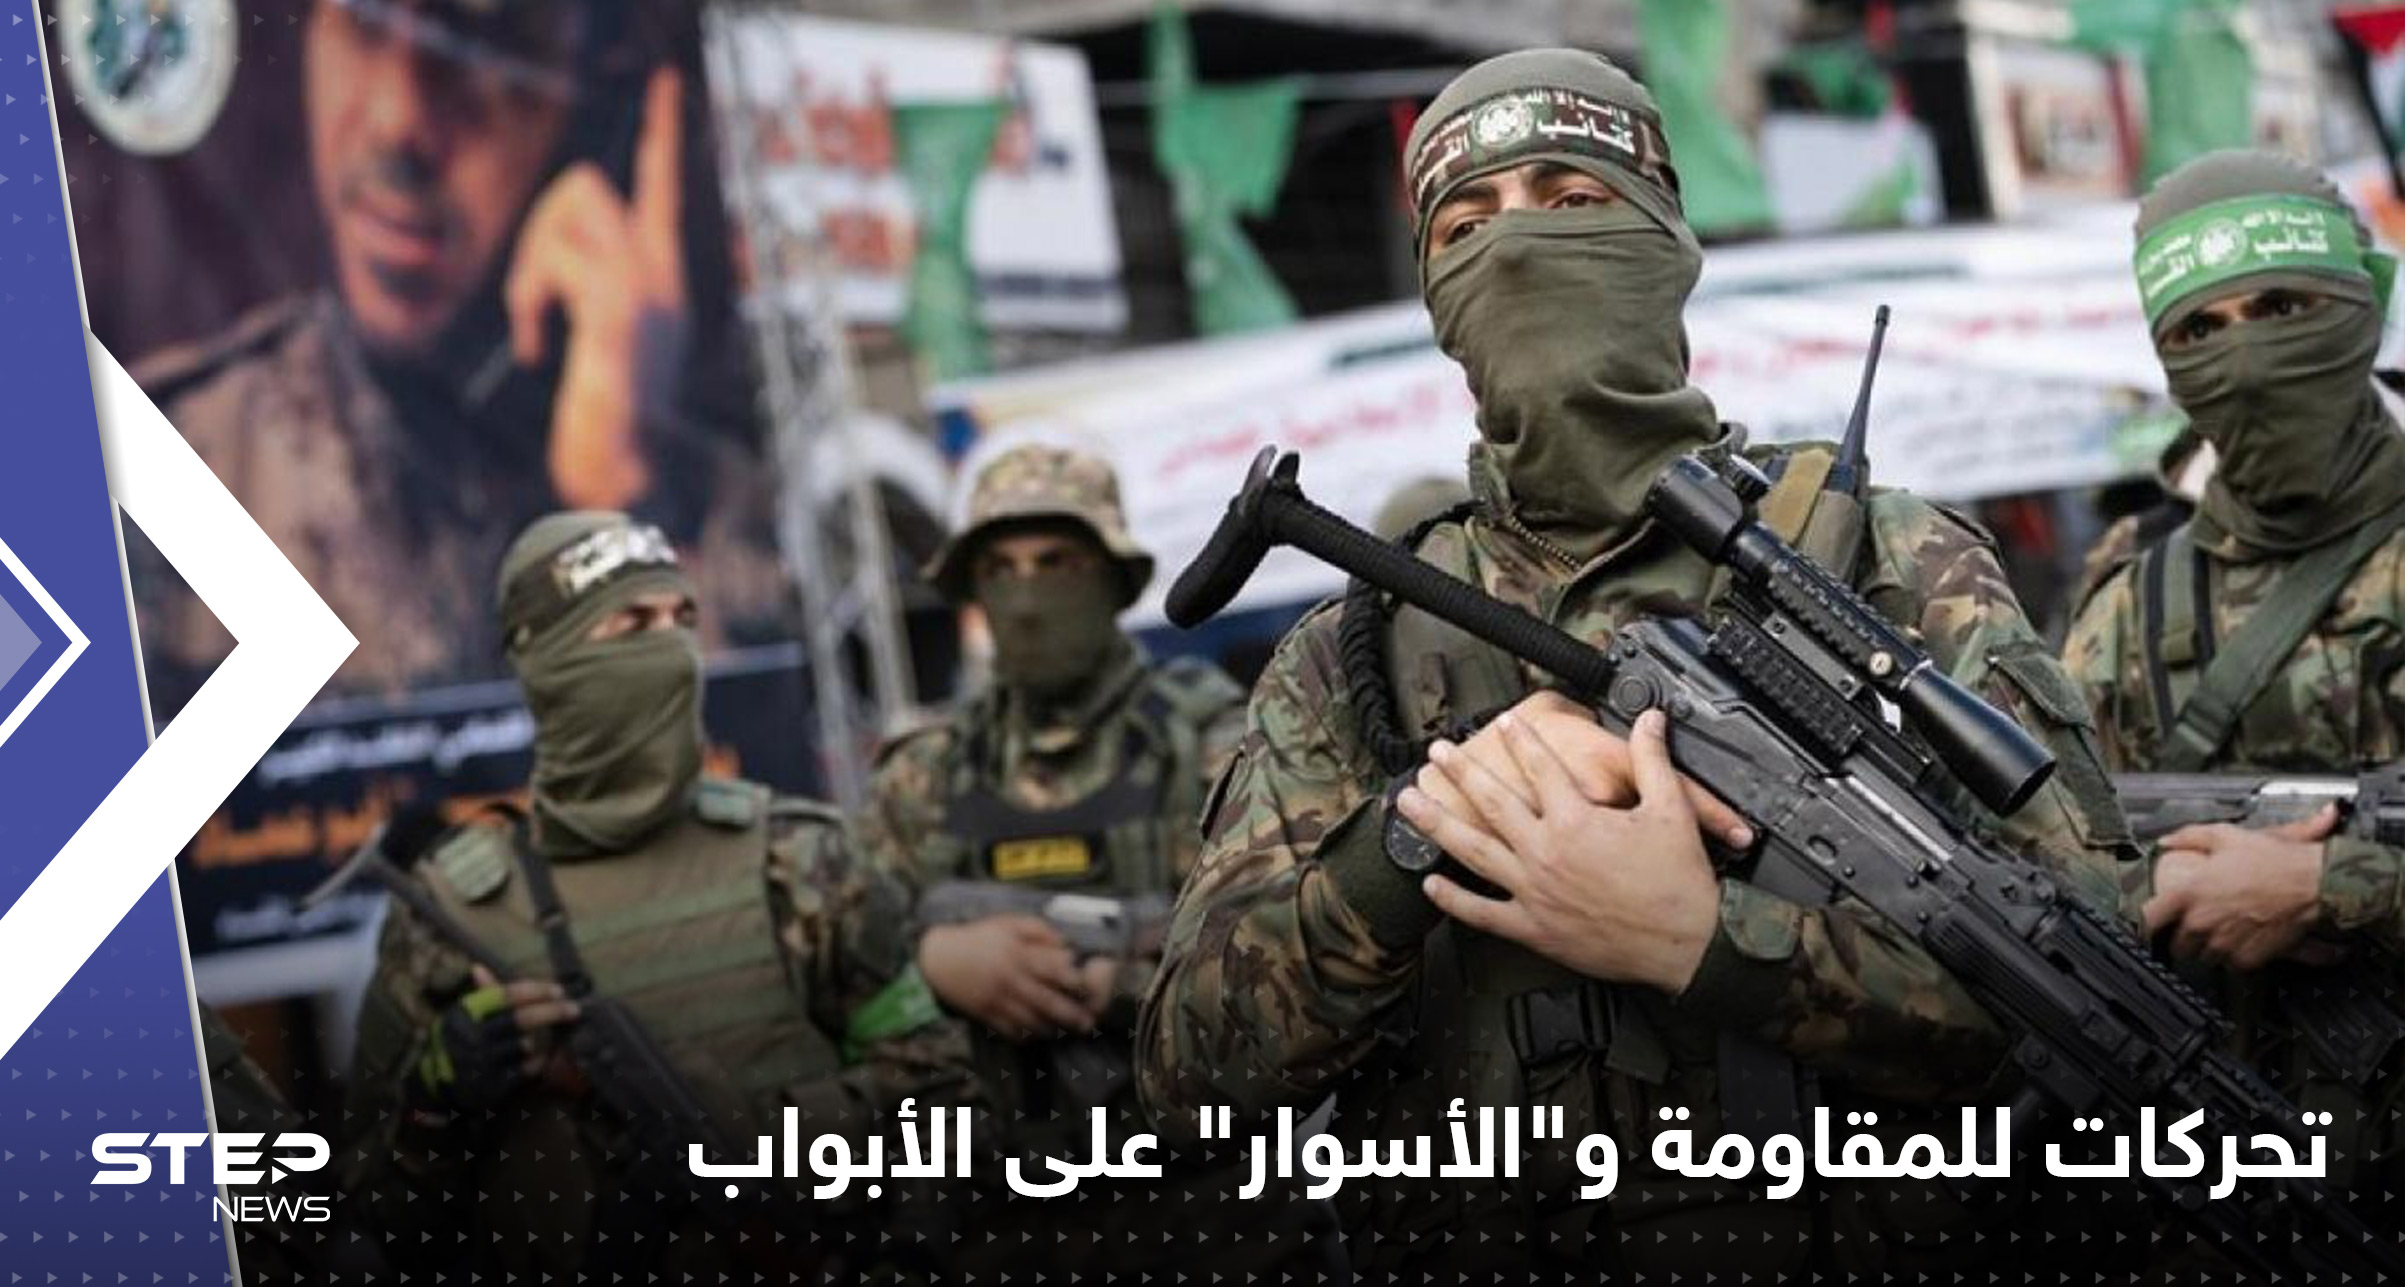 حماس تتوعد إسرائيل برد "لن يتأخر" وتحركات للجهاد الإسلامي.. تل أبيب ترى "الأسوار2" على الأبواب